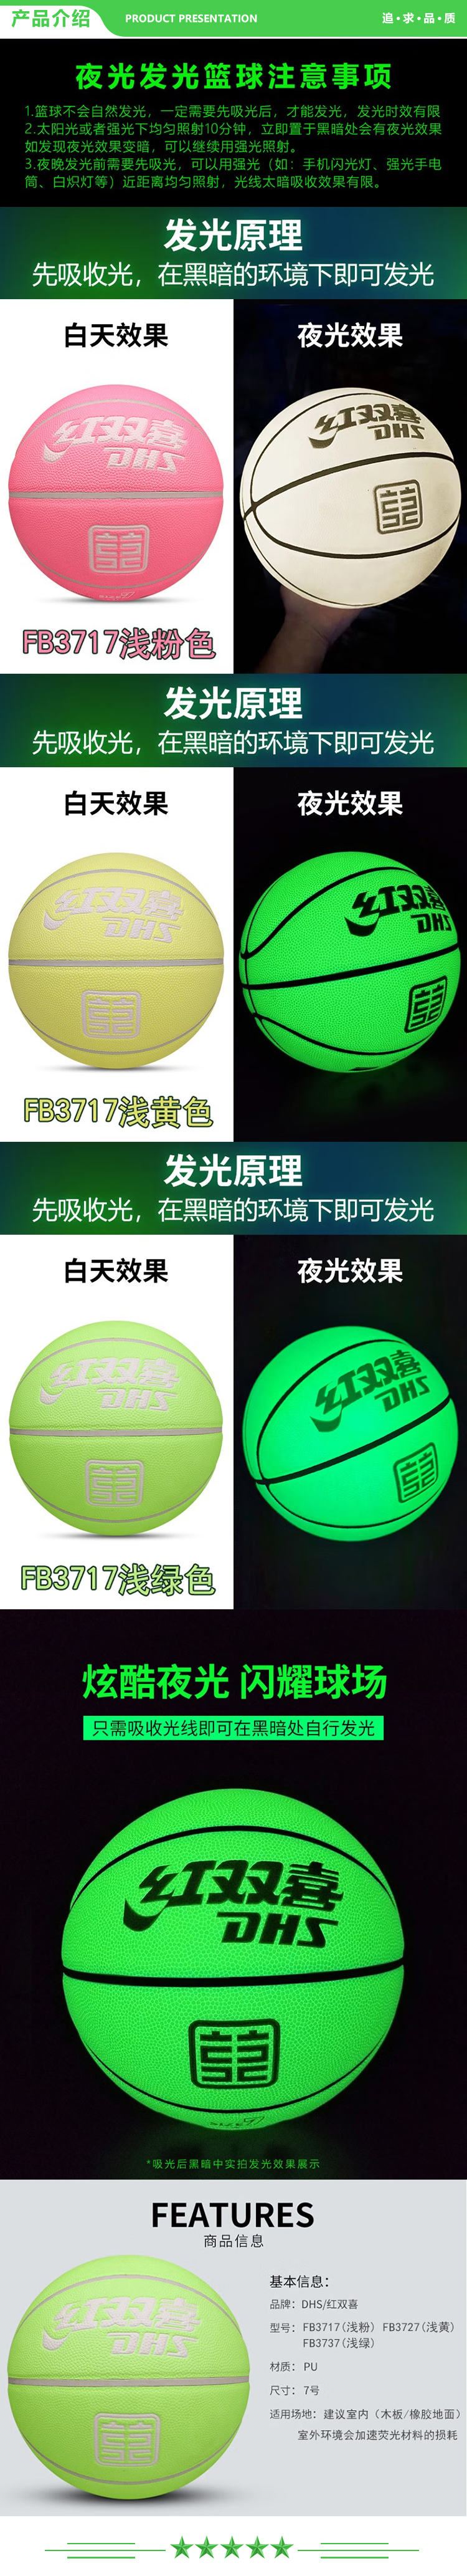 红双喜 DHS 篮球 FB3737 浅绿色 标准7号球 夜光荧光室内球 荧光夜光PU篮球   .jpg